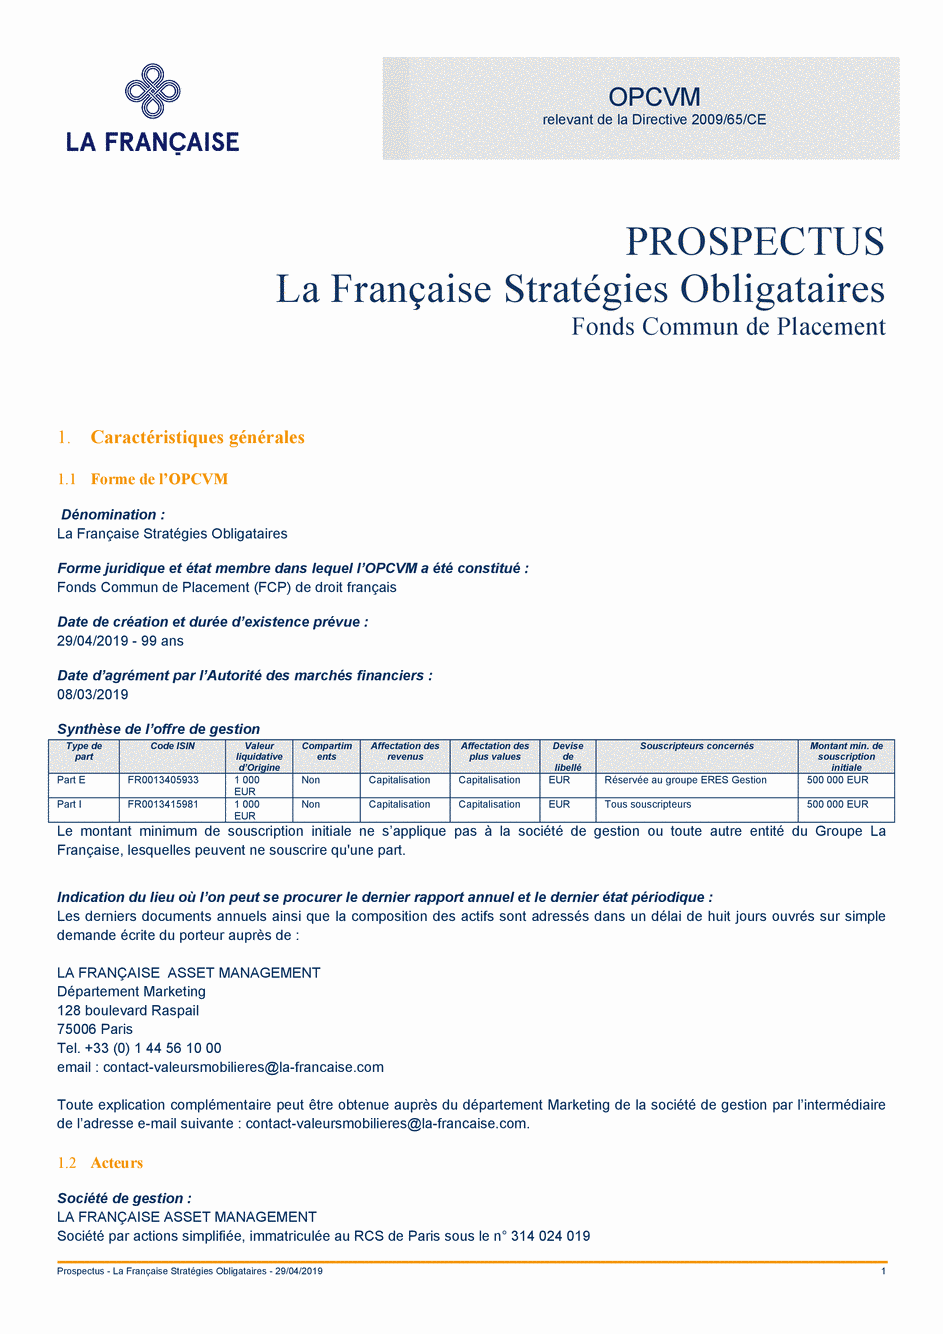 Prospectus La Française Stratégies Obligataires - Part E - 29/04/2019 - Français